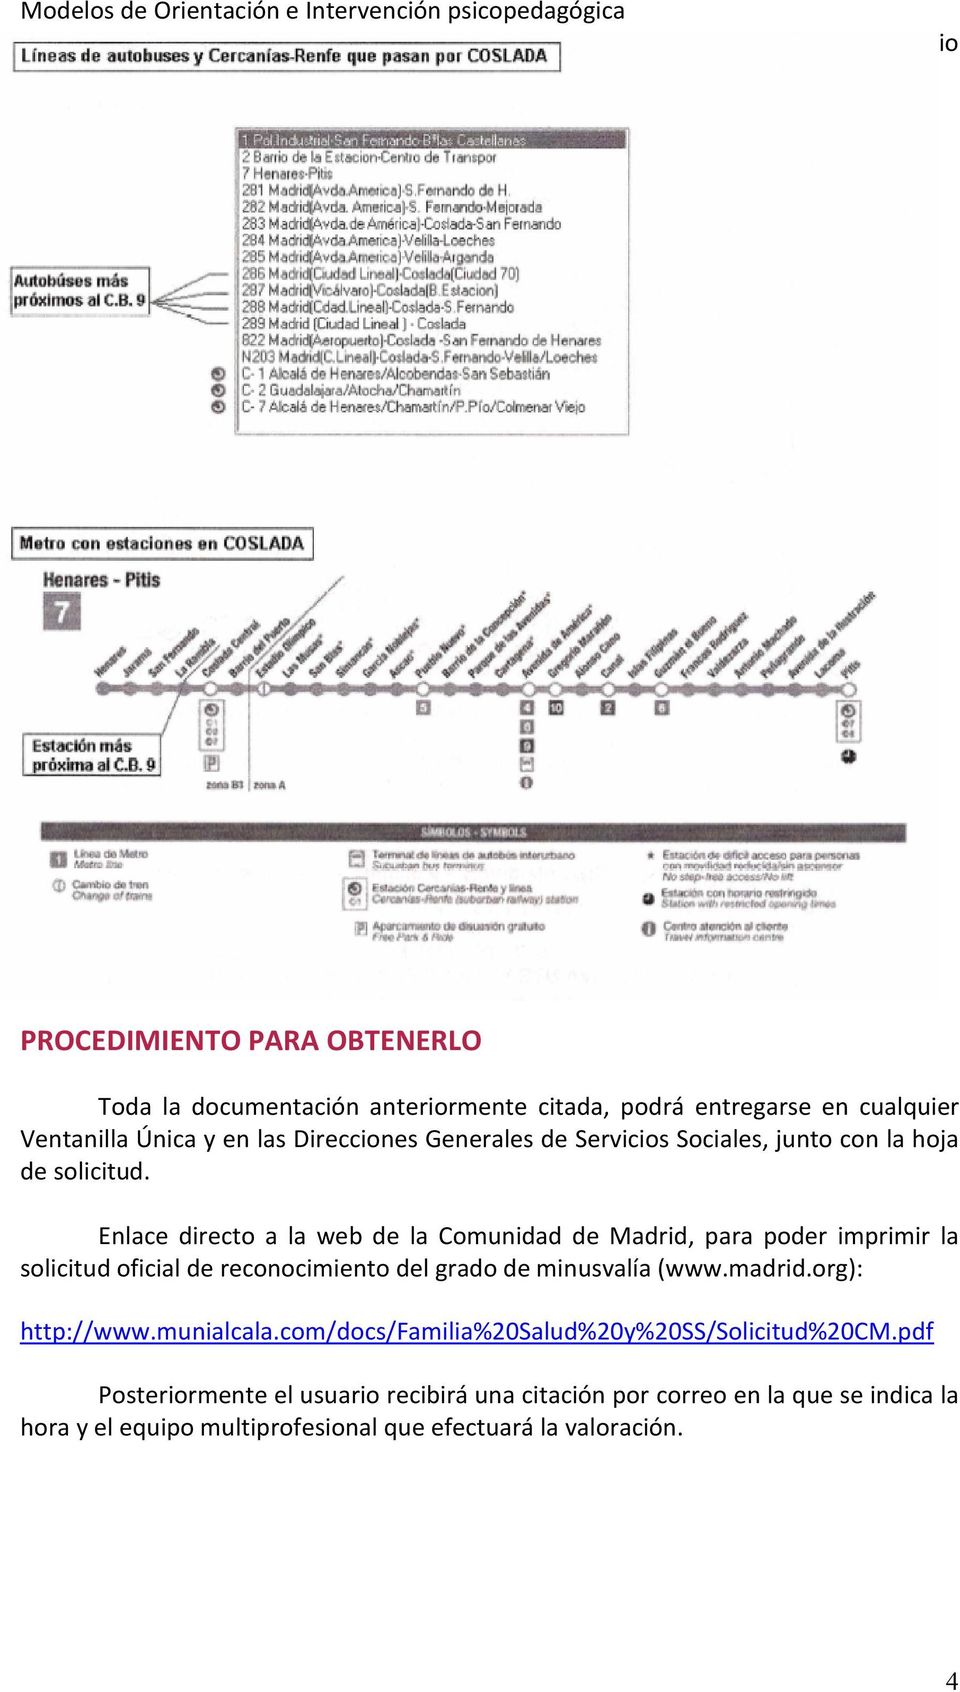 Enlace directo a la web de la Comunidad de Madrid, para poder imprimir la solicitud oficial de reconocimiento del grado de minusvalía (www.